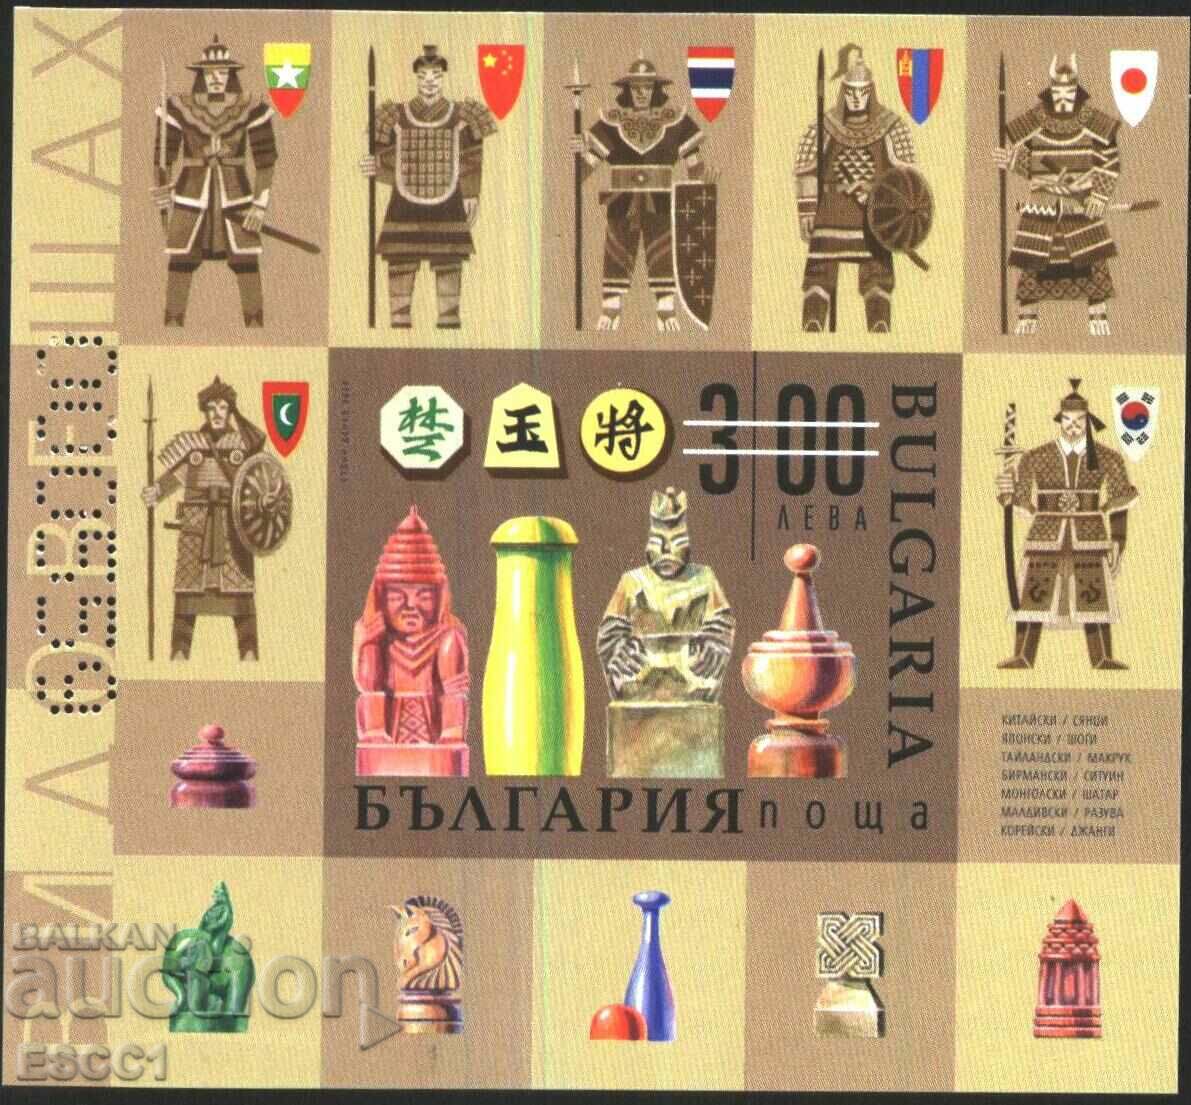 Μπλοκ αναμνηστικών Sport Chess 2020 από τη Βουλγαρία